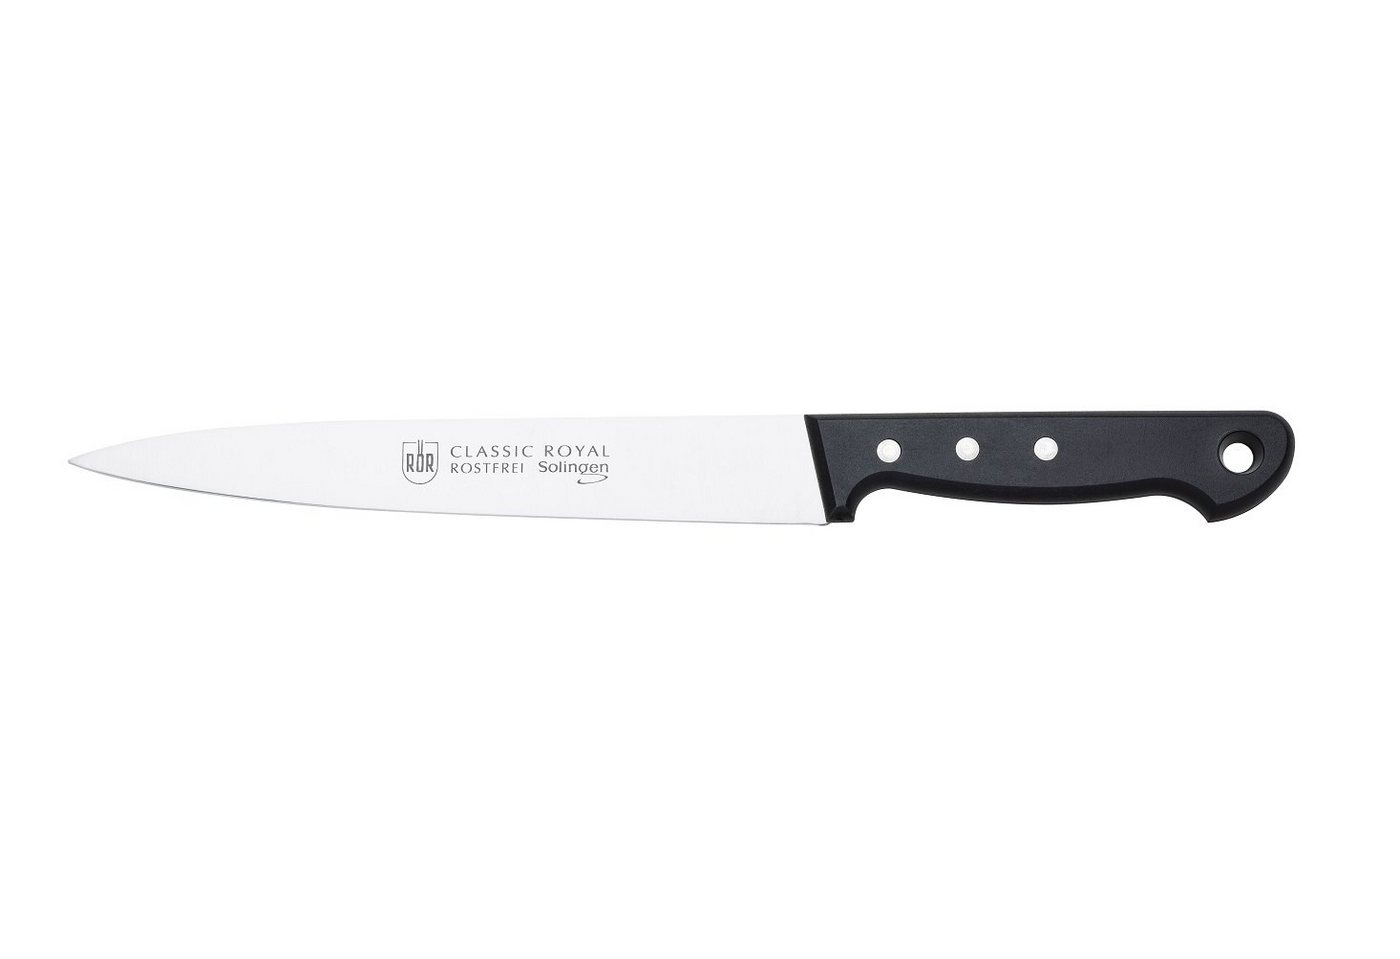 RÖR Fleischmesser 10268, Classic Royal Fleischmesser, hochwertiger Messerstahl - Griff mit Nieten - Made in Solingen von RÖR